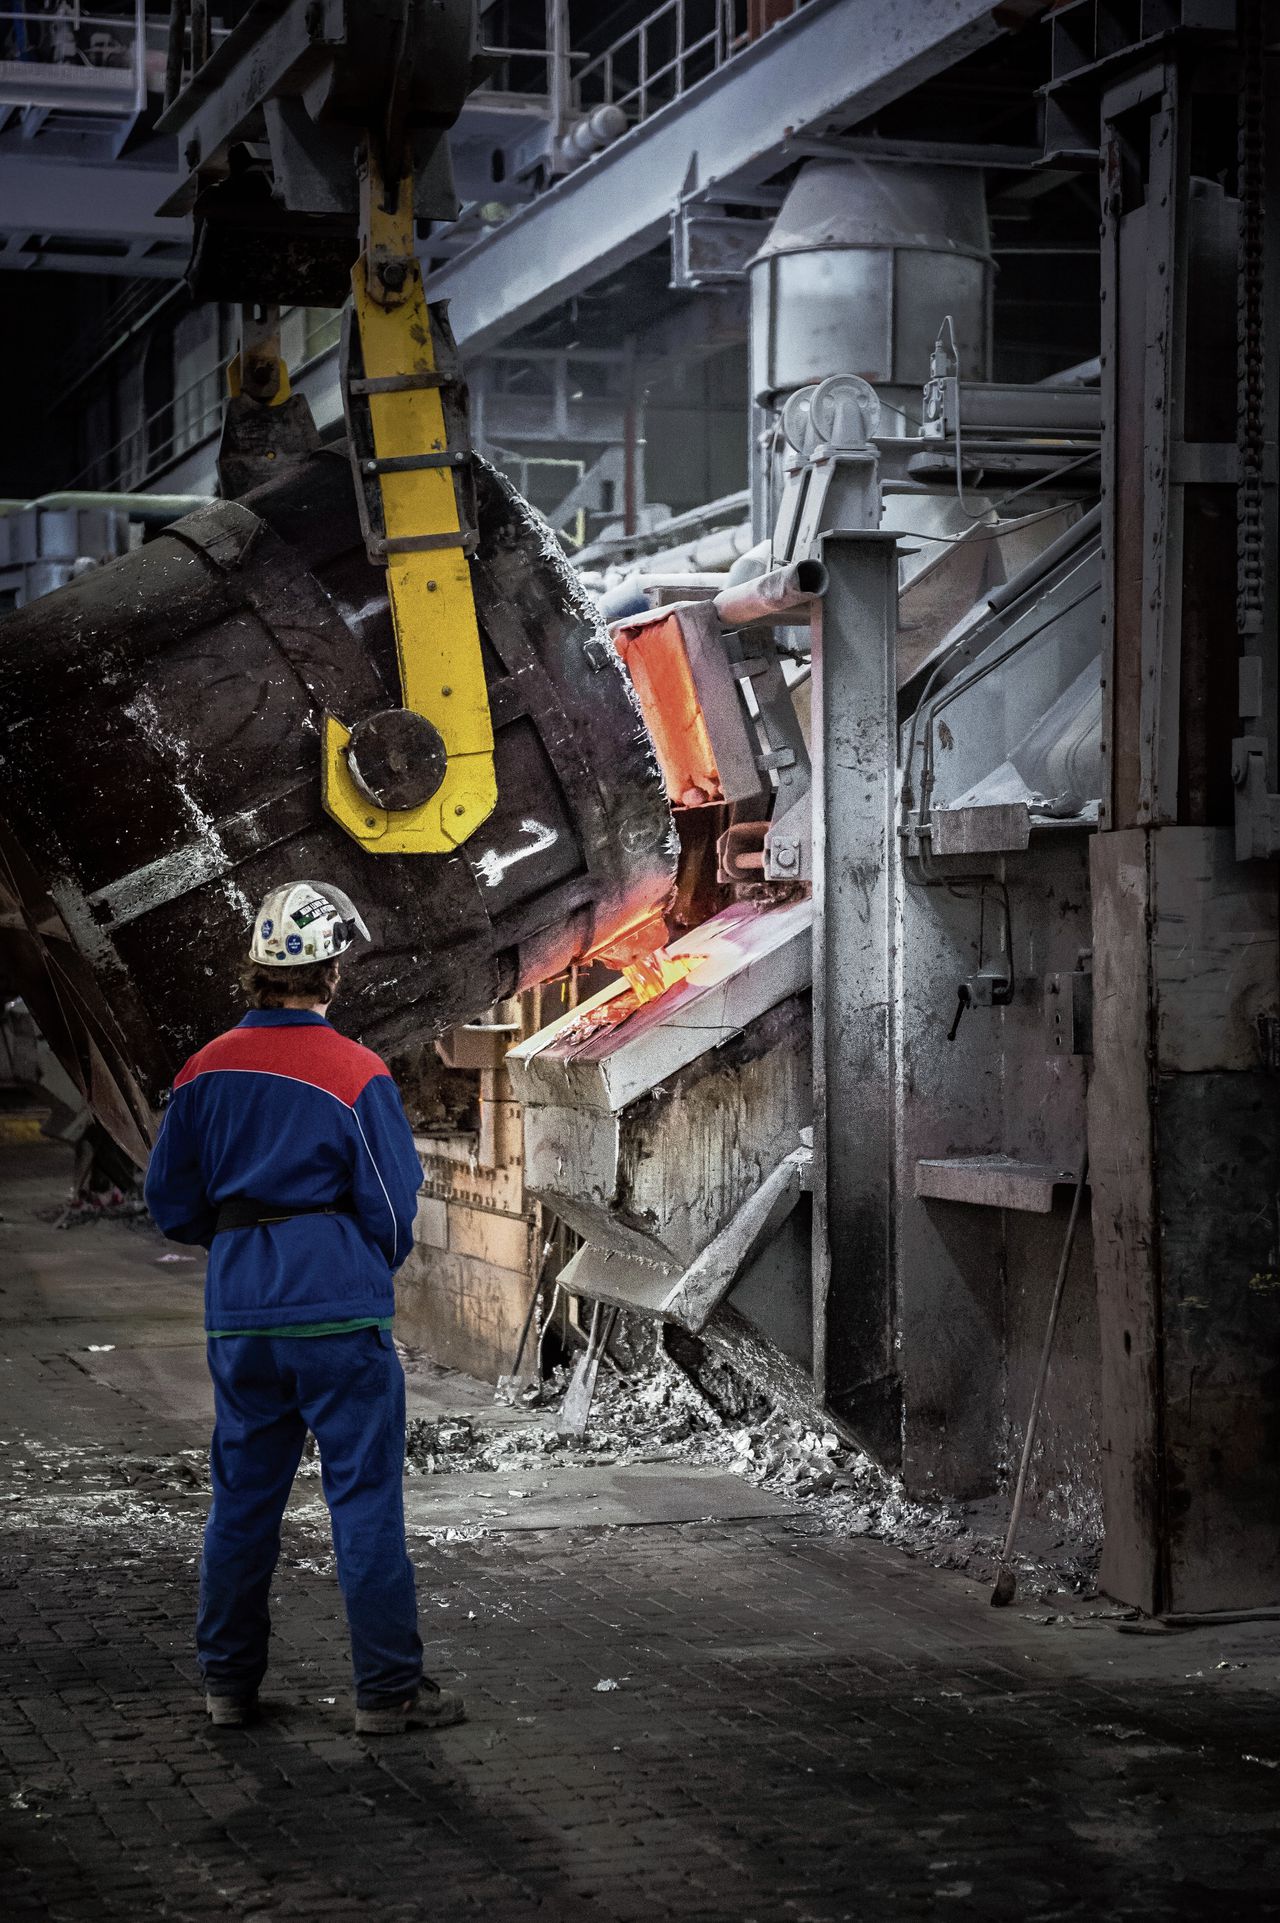 In 2015 startte de Amerikaanse durfinvesteerder Gary Klesch aluminiumgieterij en -smelterij Aldel in Delfzijl toch weer op, met de helft van de ovens en de helft van de werknemers.